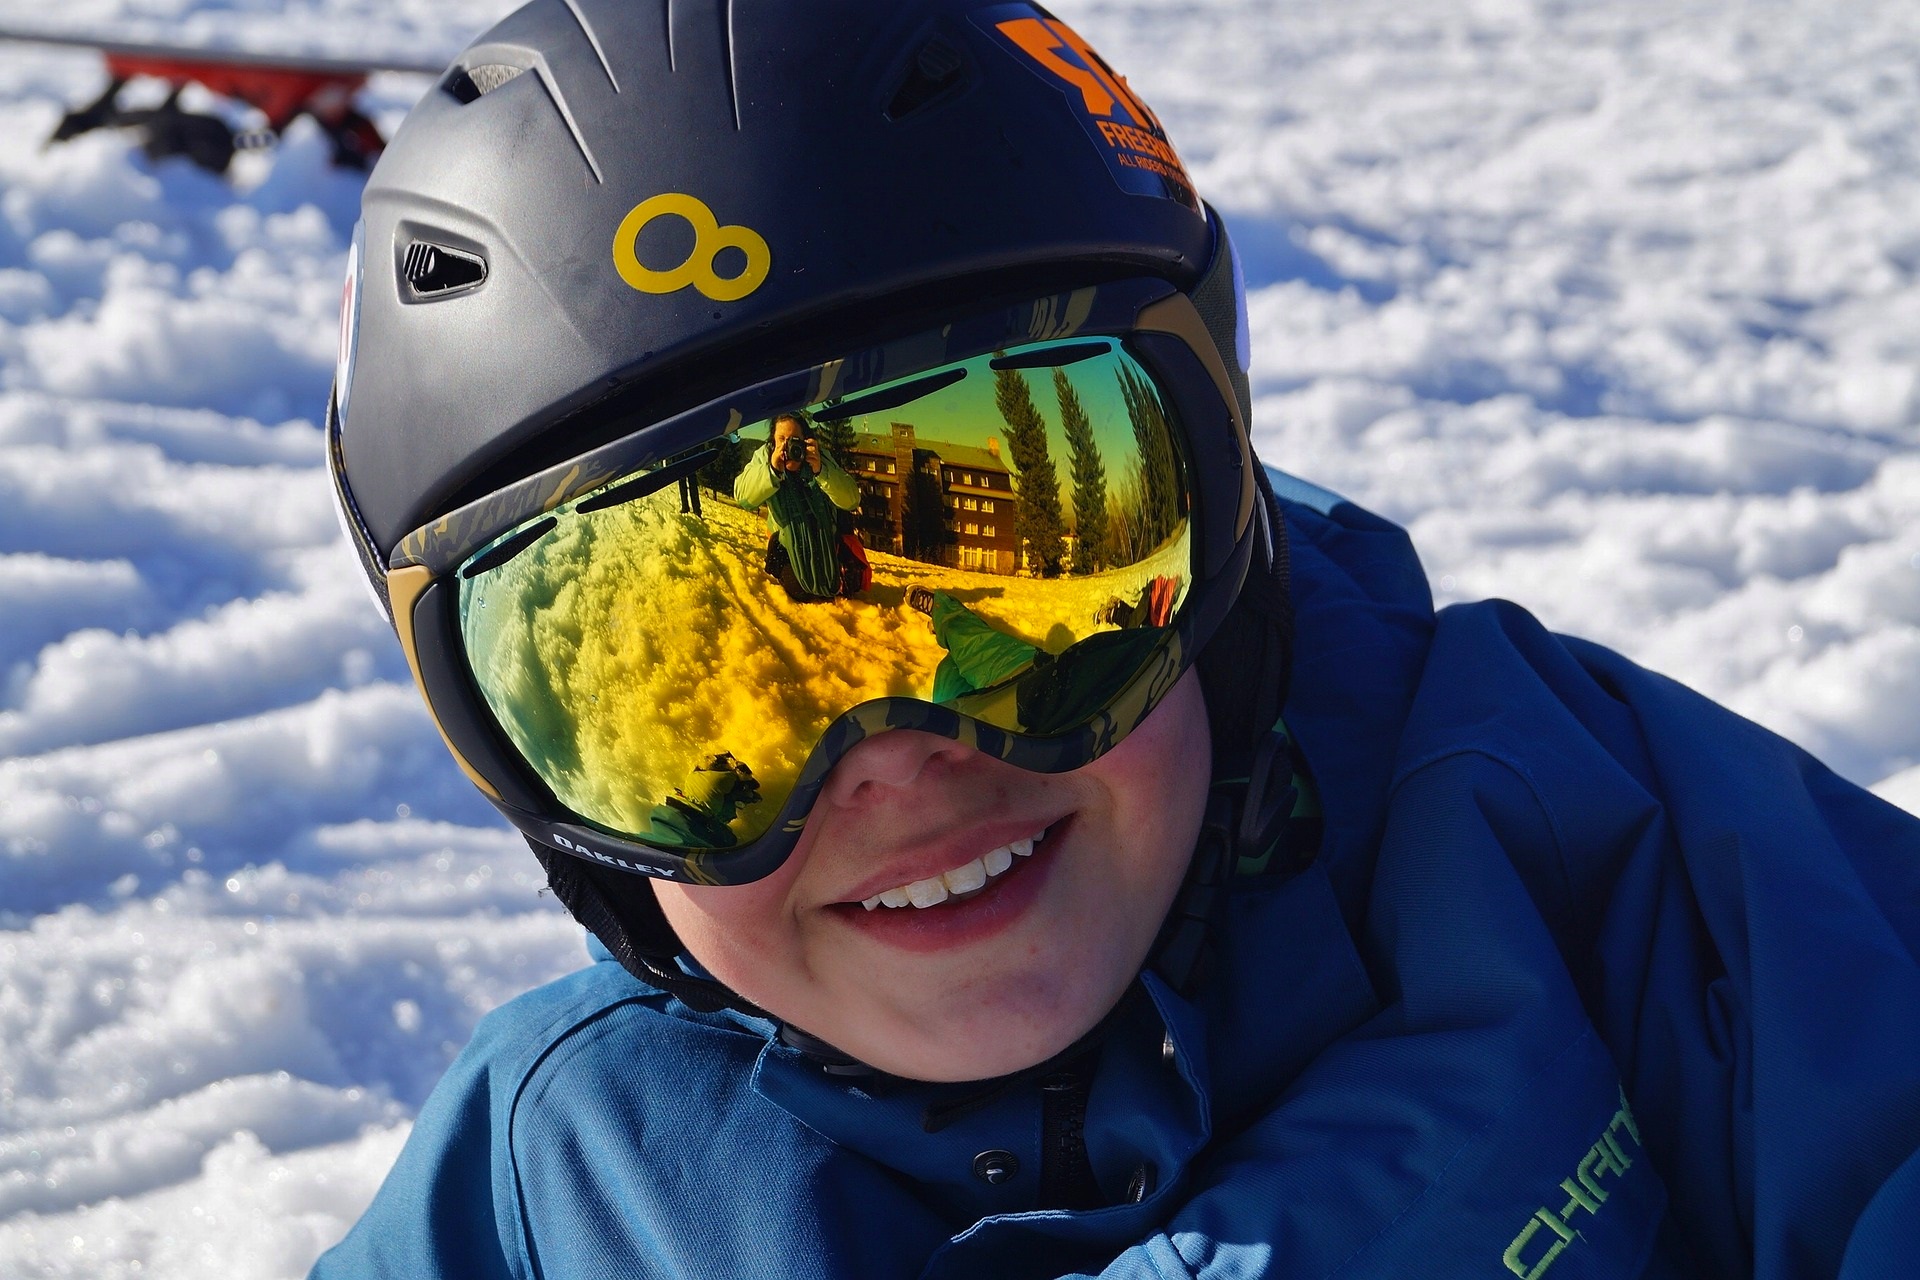 skibrille-durchblick-piste-skifahren-uv-schutz-beschlagen-optik-weissmann-oberaudorf-schibrillen-belueftungsloecher-sicht-luftzirkulationssystem-brillentraeger-antifog